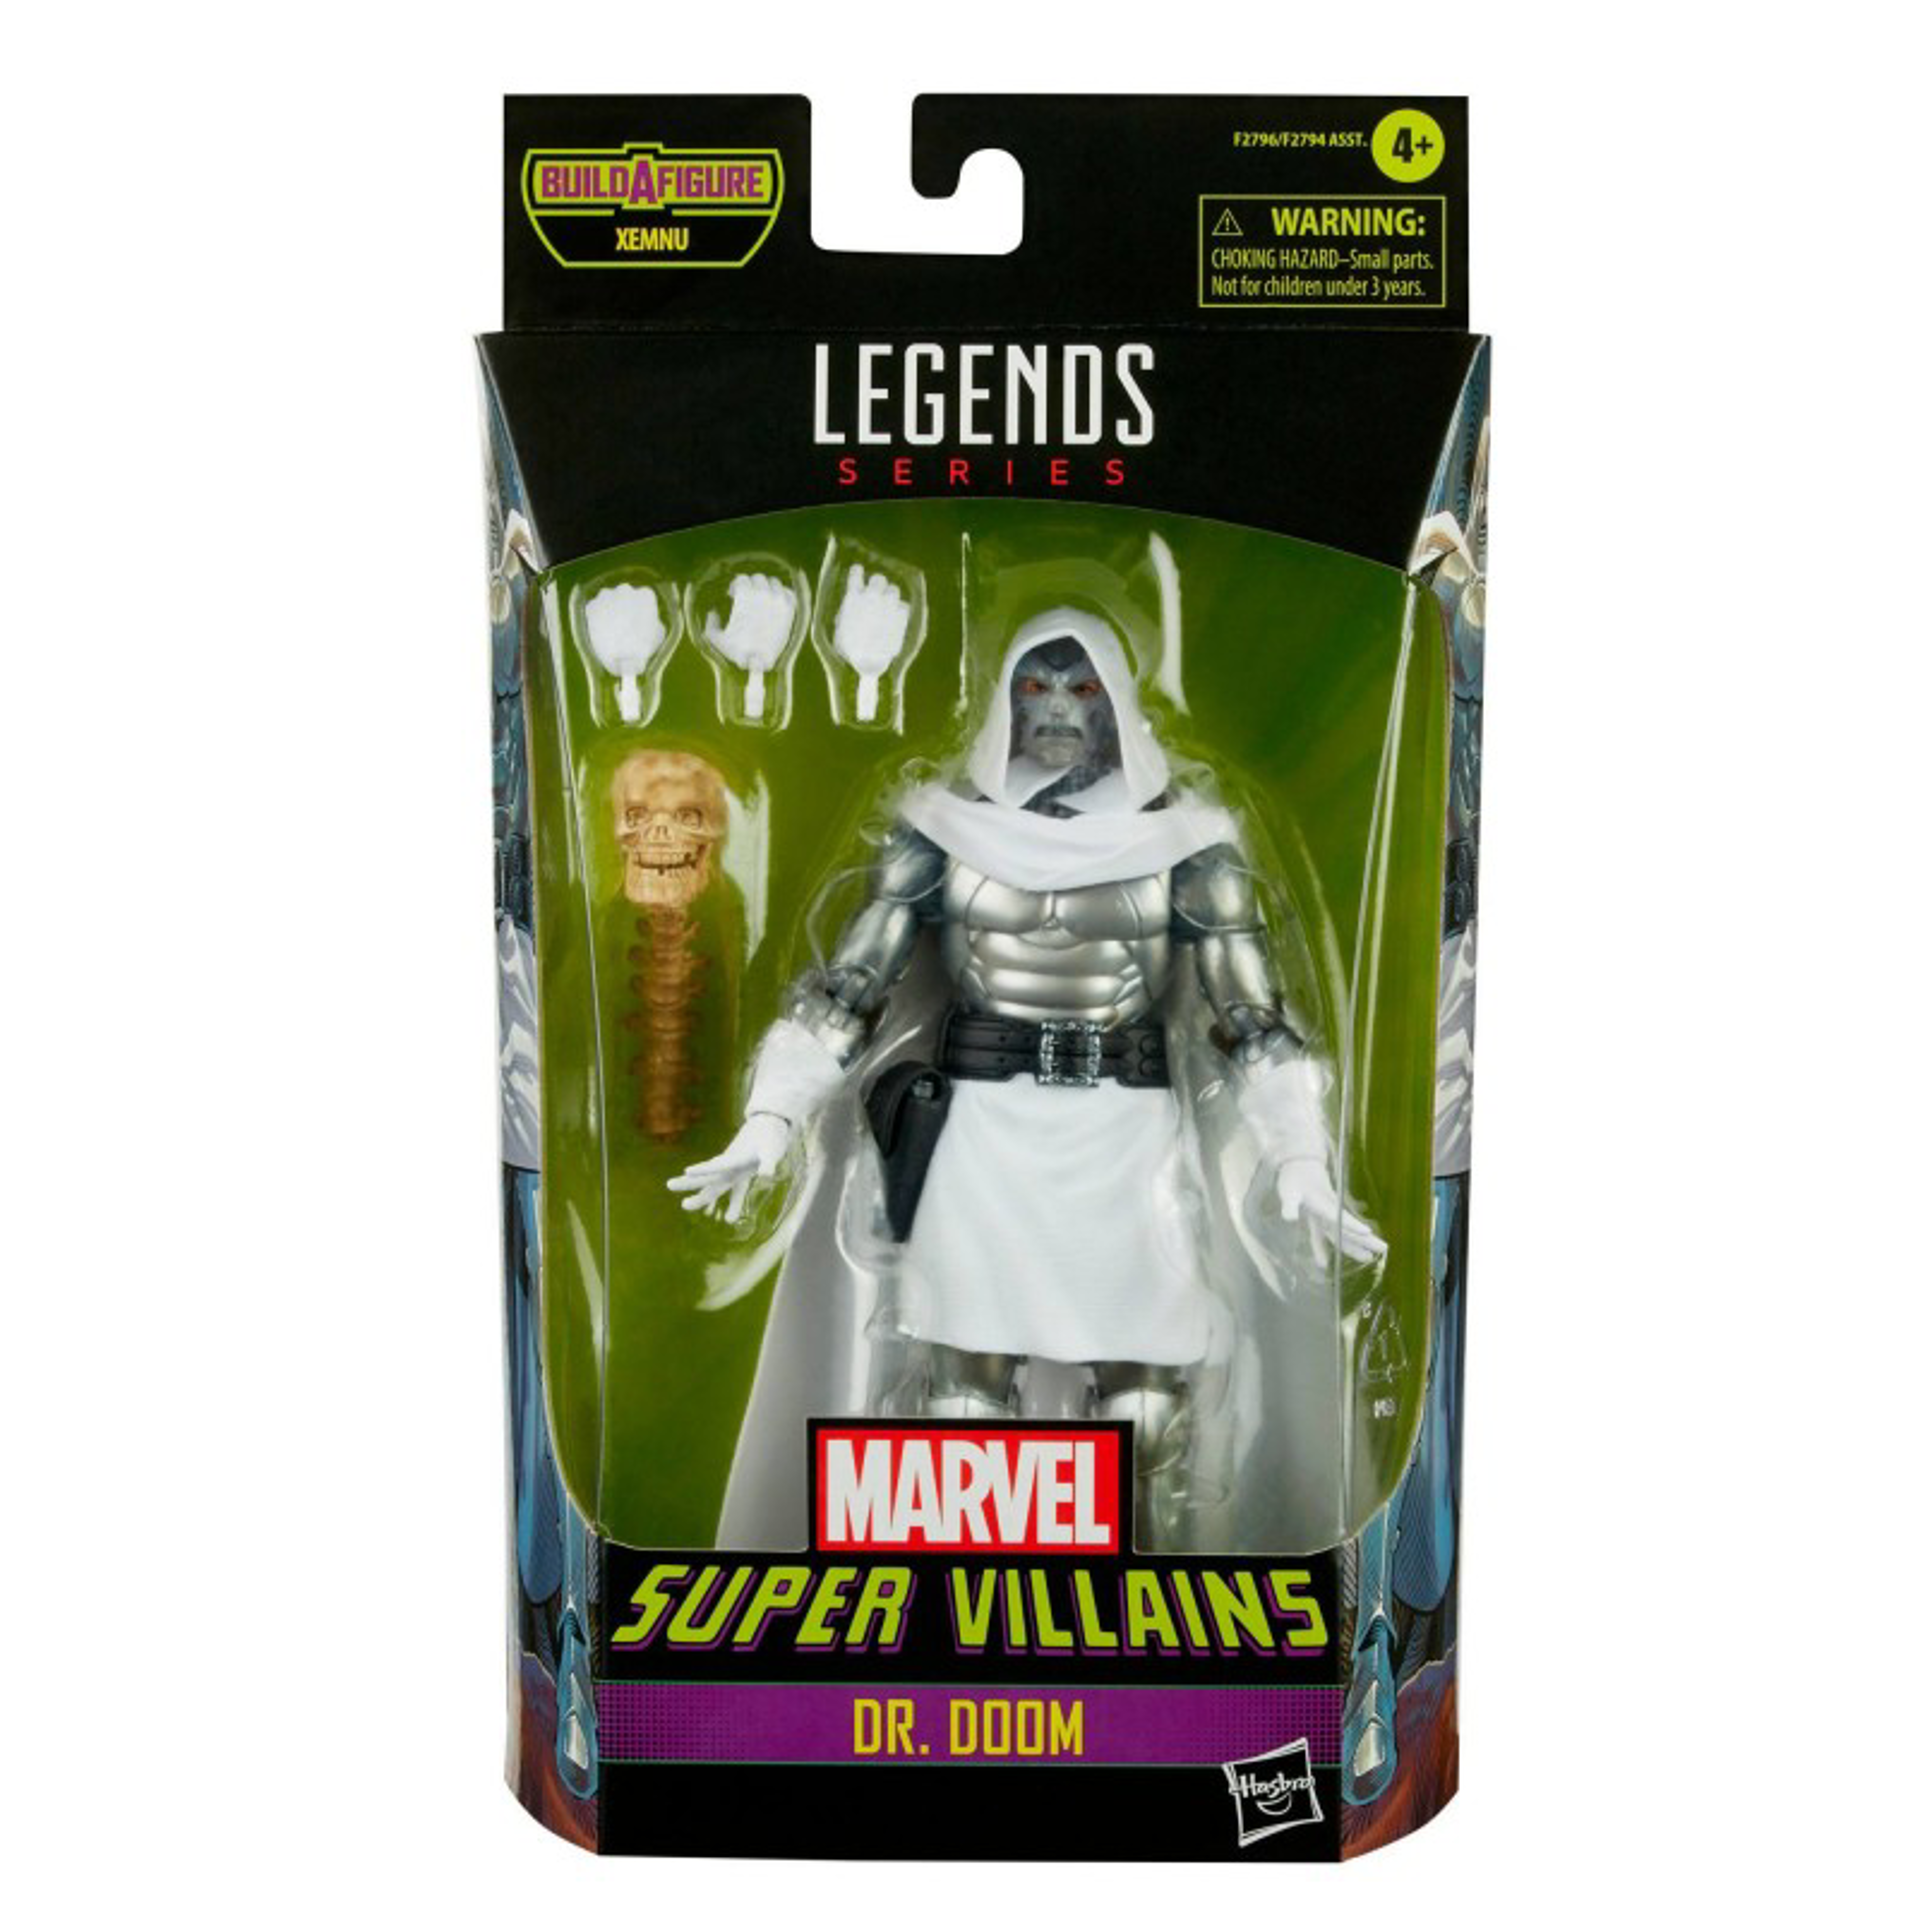 Marvel Legends Series - Build-A-Figure Série Xemnu - Marvel Super Villains Figurine d'action de Dr. Doom 15cm